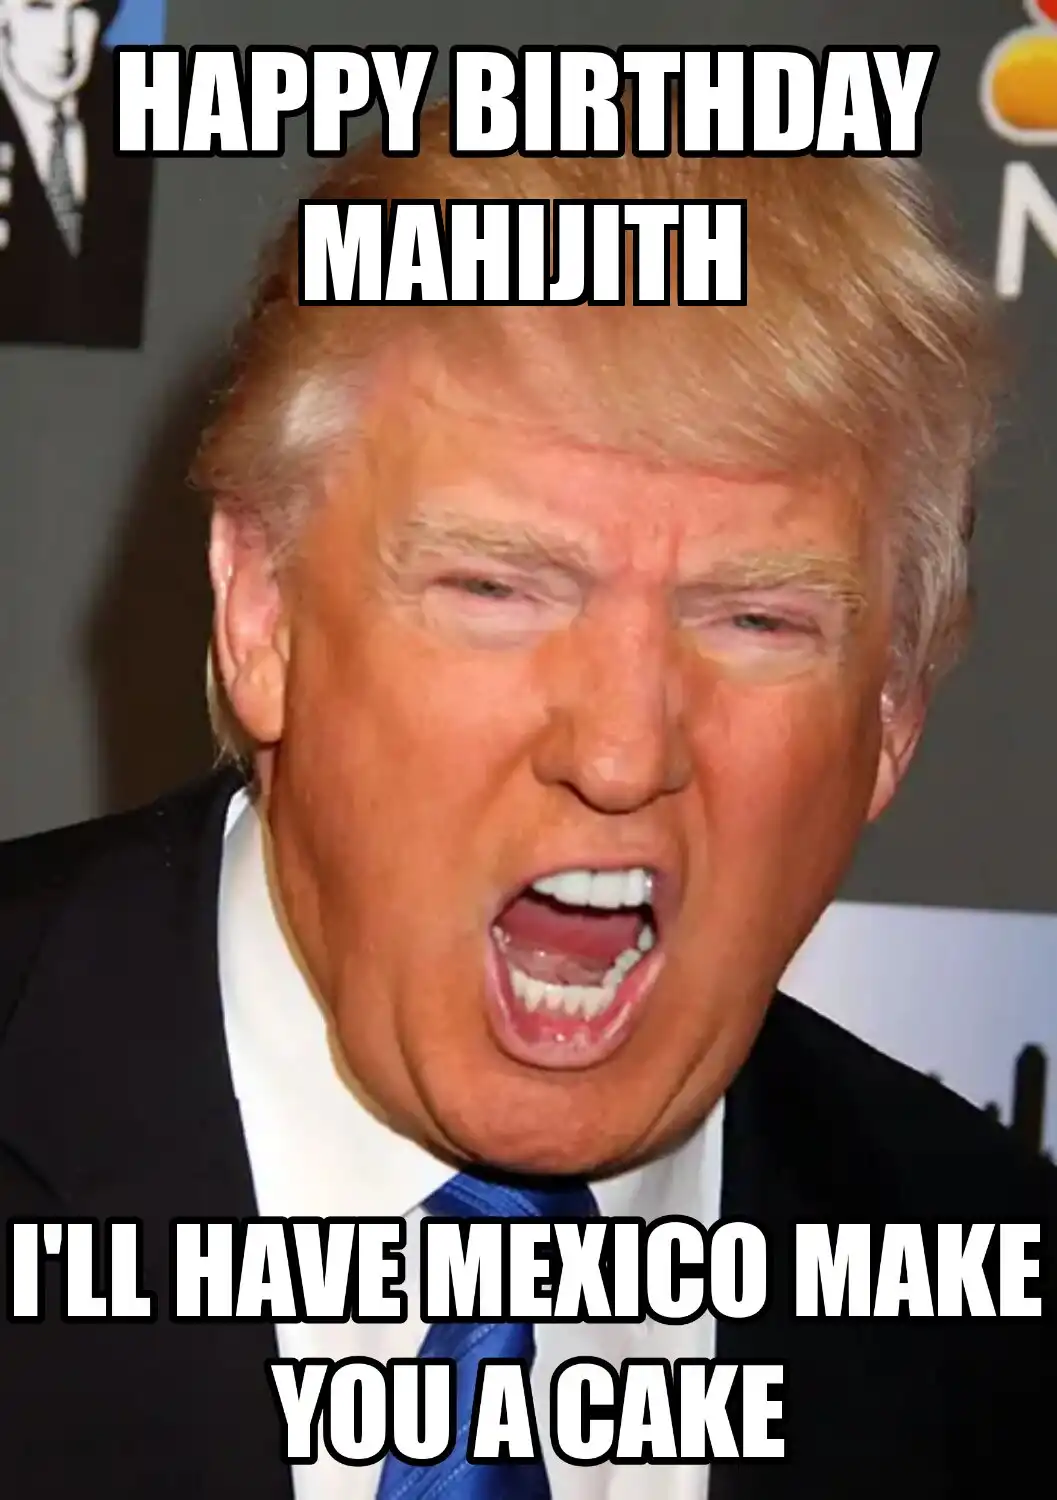 Happy Birthday Mahijith Mexico Make You A Cake Meme